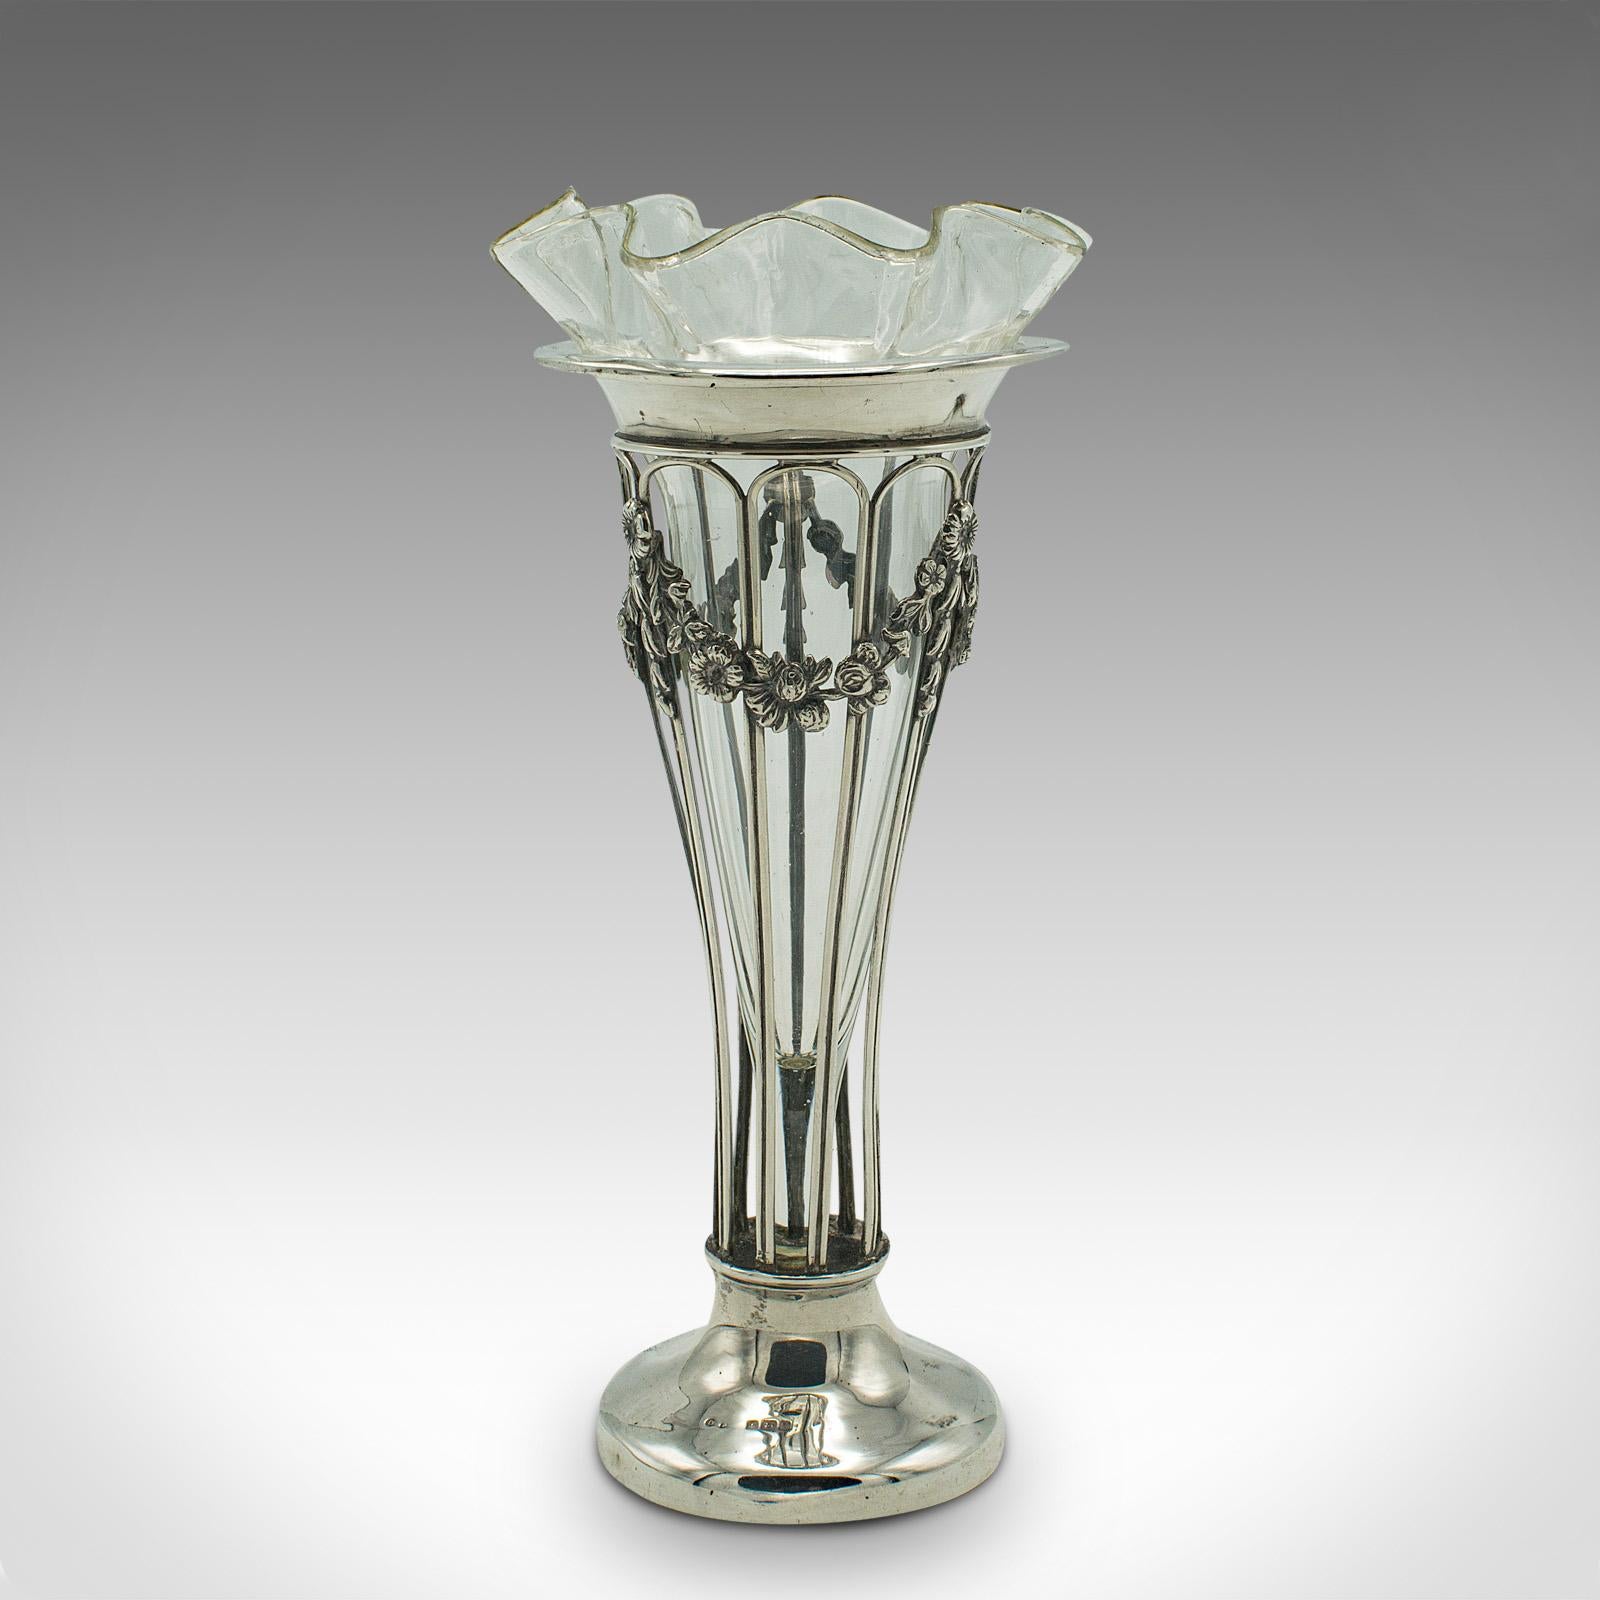 20th Century Small Antique Stem Vase, English, Silver, Glass, Decor, Art Nouveau, Edwardian For Sale